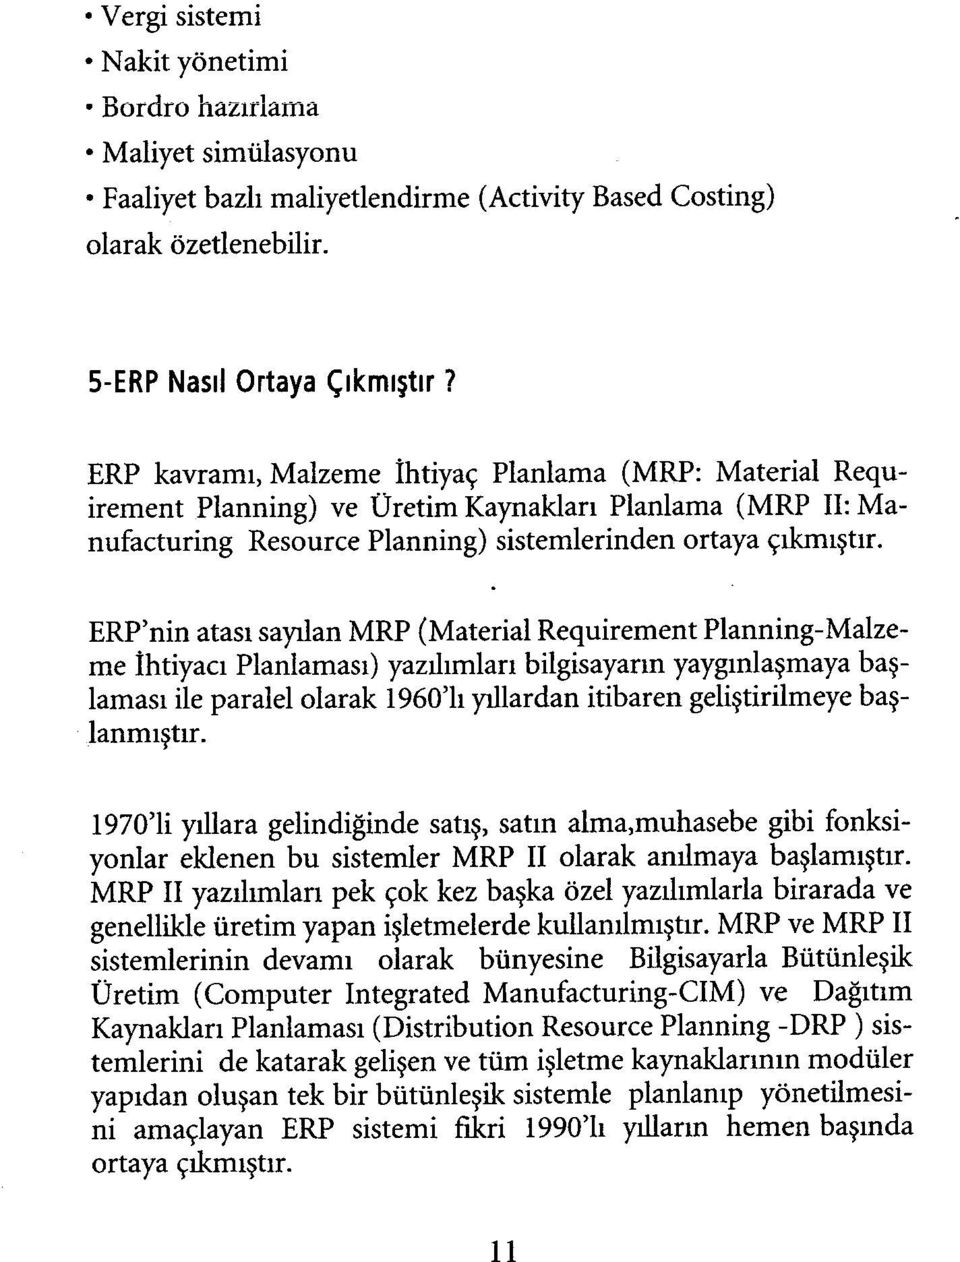 ERP'nin atası sayılan MRP (Material Requirement Planning-Malzeme İhtiyacı Planlaması) yazılımları bilgisayarın yaygınlaşmaya başlaması ile paralel olarak 1960'lı yıllardan itibaren geliştirilmeye